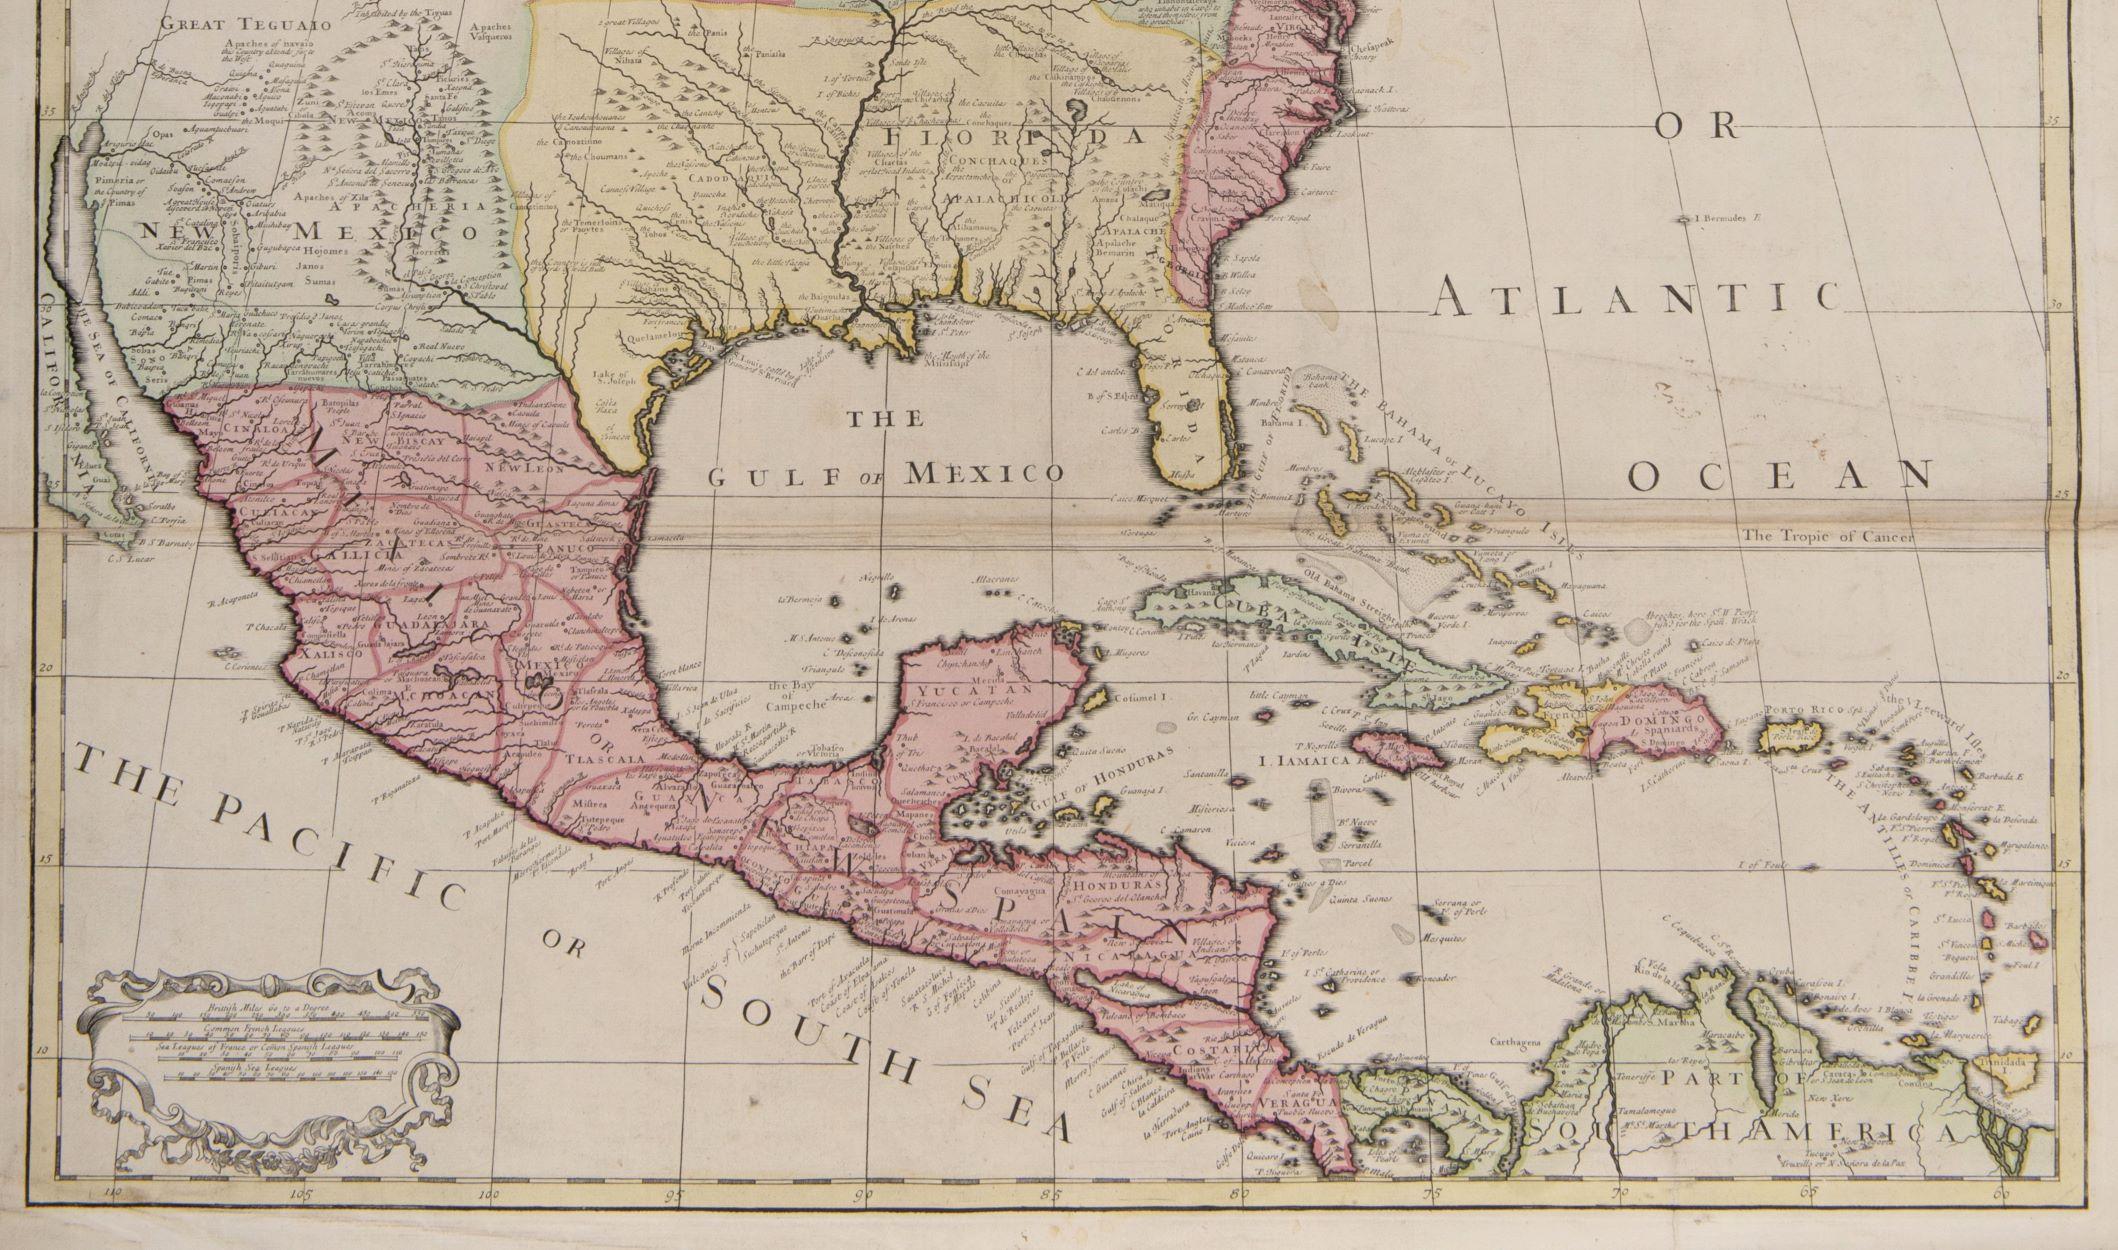 eine der frühesten großformatigen englischen Karten von Nordamerika
SENEX, John.
Nord-Amerika  Korrigiert nach den Beobachtungen, die der Royal Society in London und der Royal Academy in Paris mitgeteilt wurden. Von John Senex F.R.S. 1710.  An den